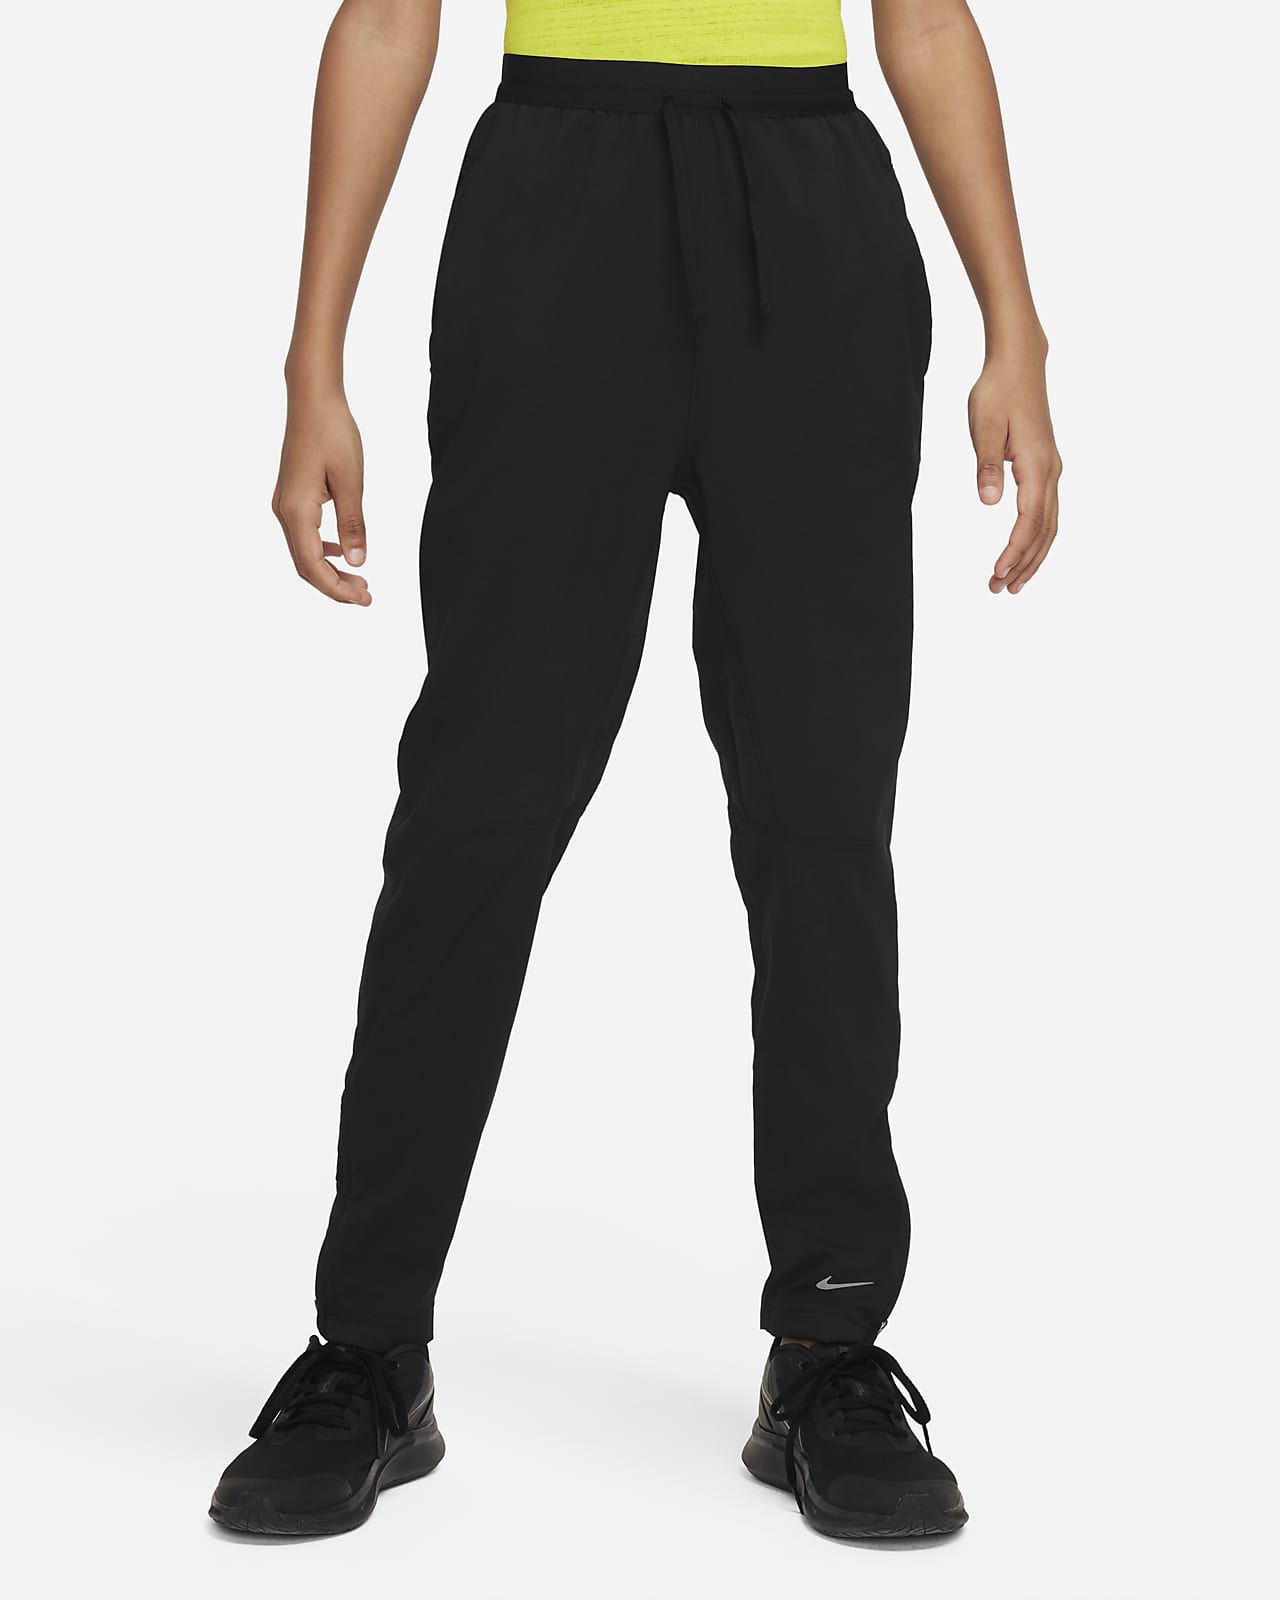 Pantalon de training Dri-FIT Nike Multi Tech EasyOn pour ado (garçon)